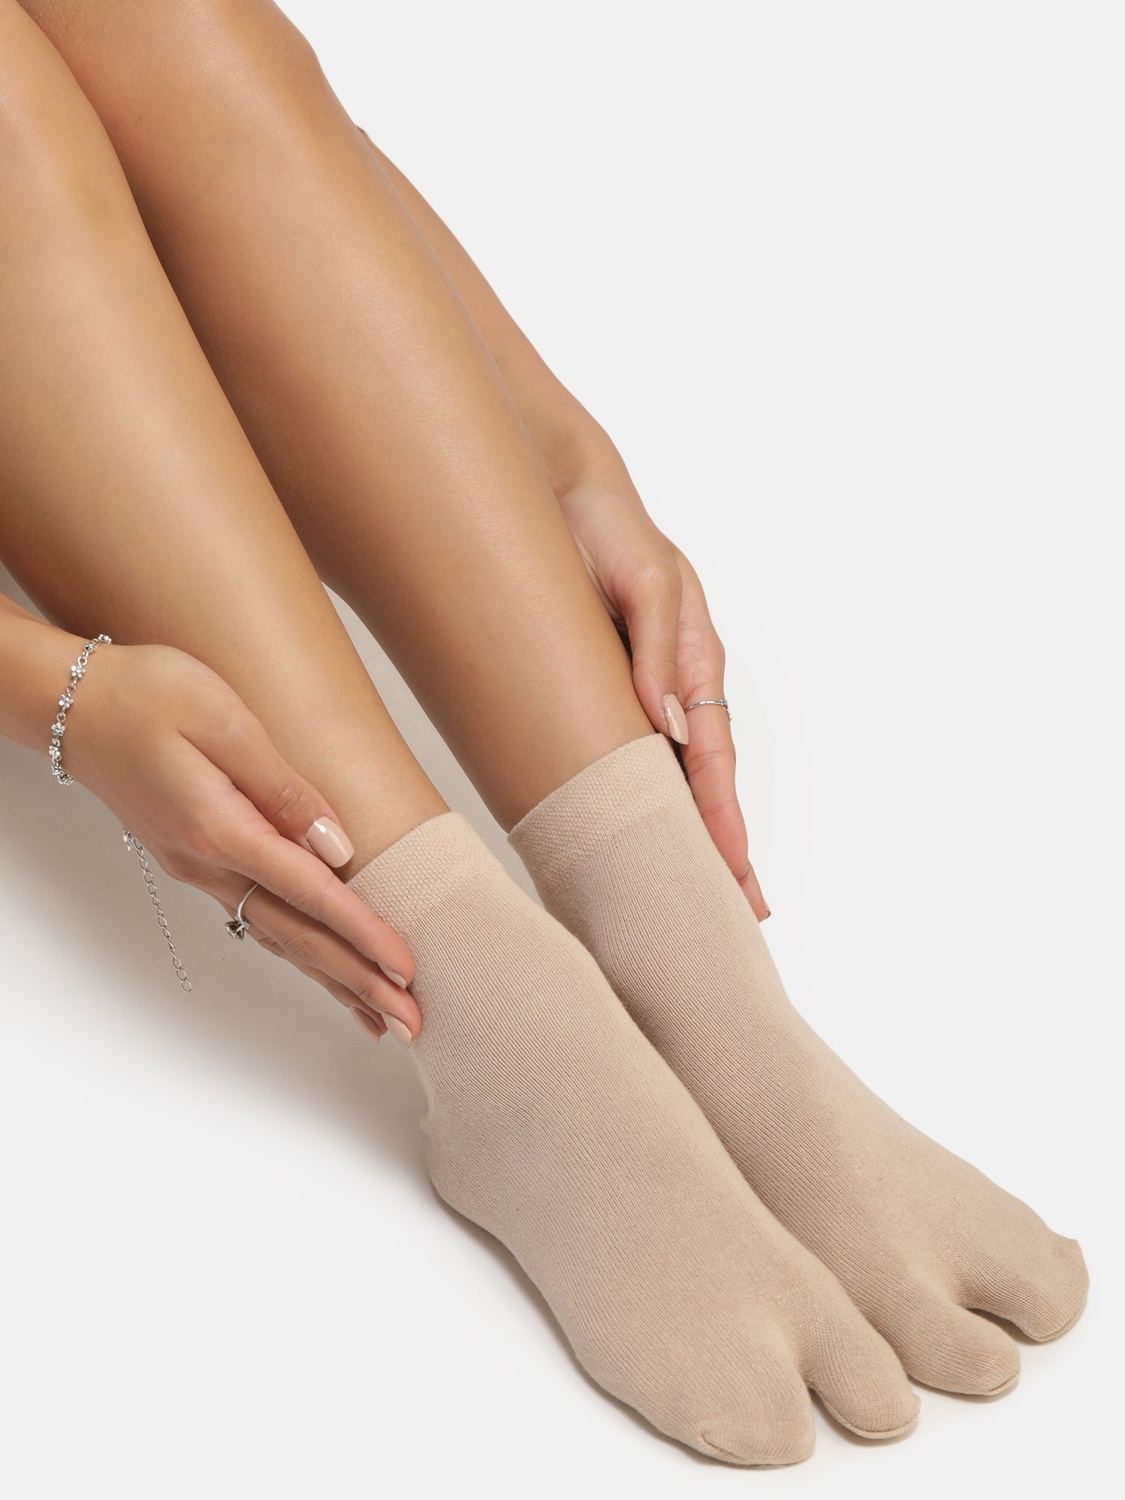 Ankle Length Thumb Socks - Skin